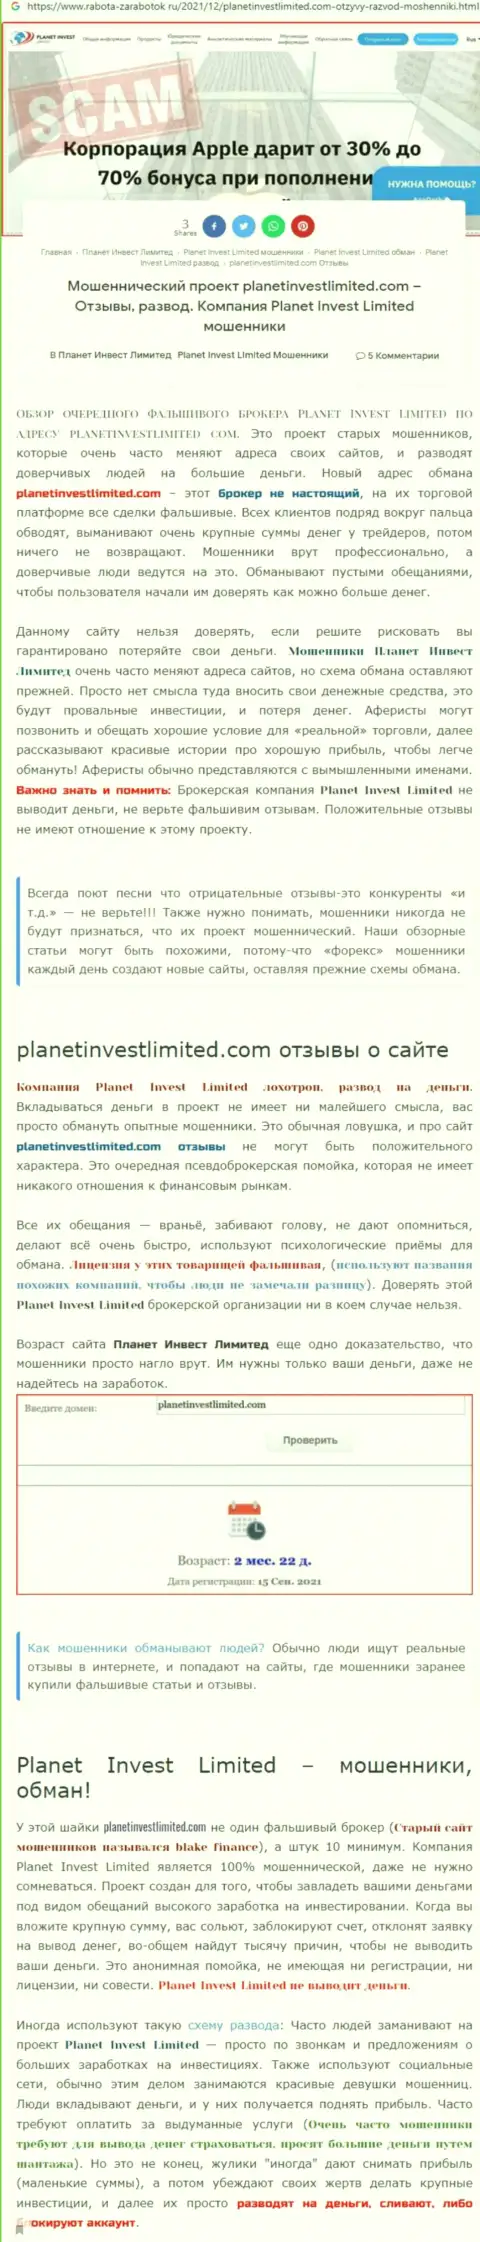 Не опасно ли совместно работать с Planet Invest Limited ? (Обзор компании)